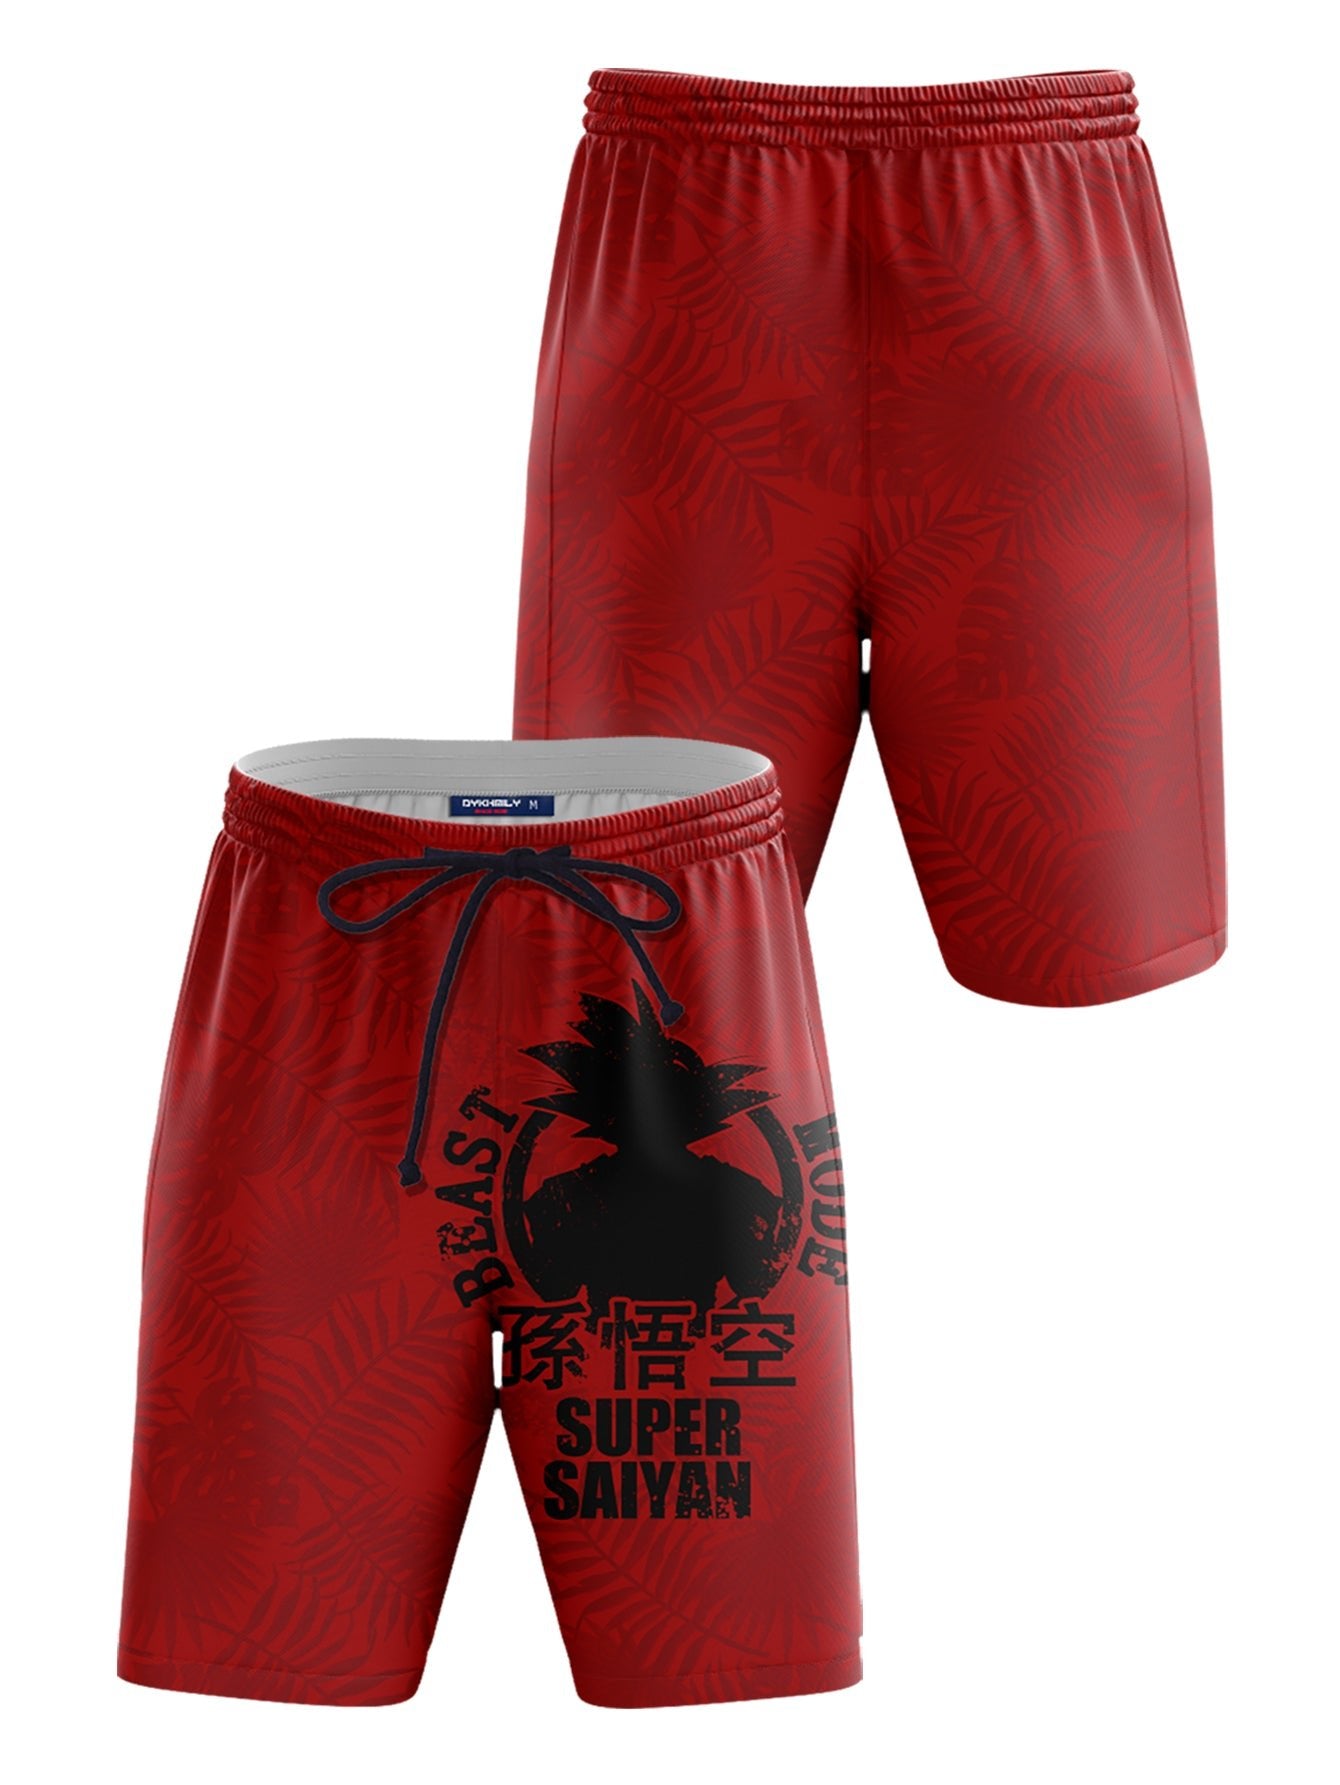 Fandomaniax - Super Saiyan Beach Shorts